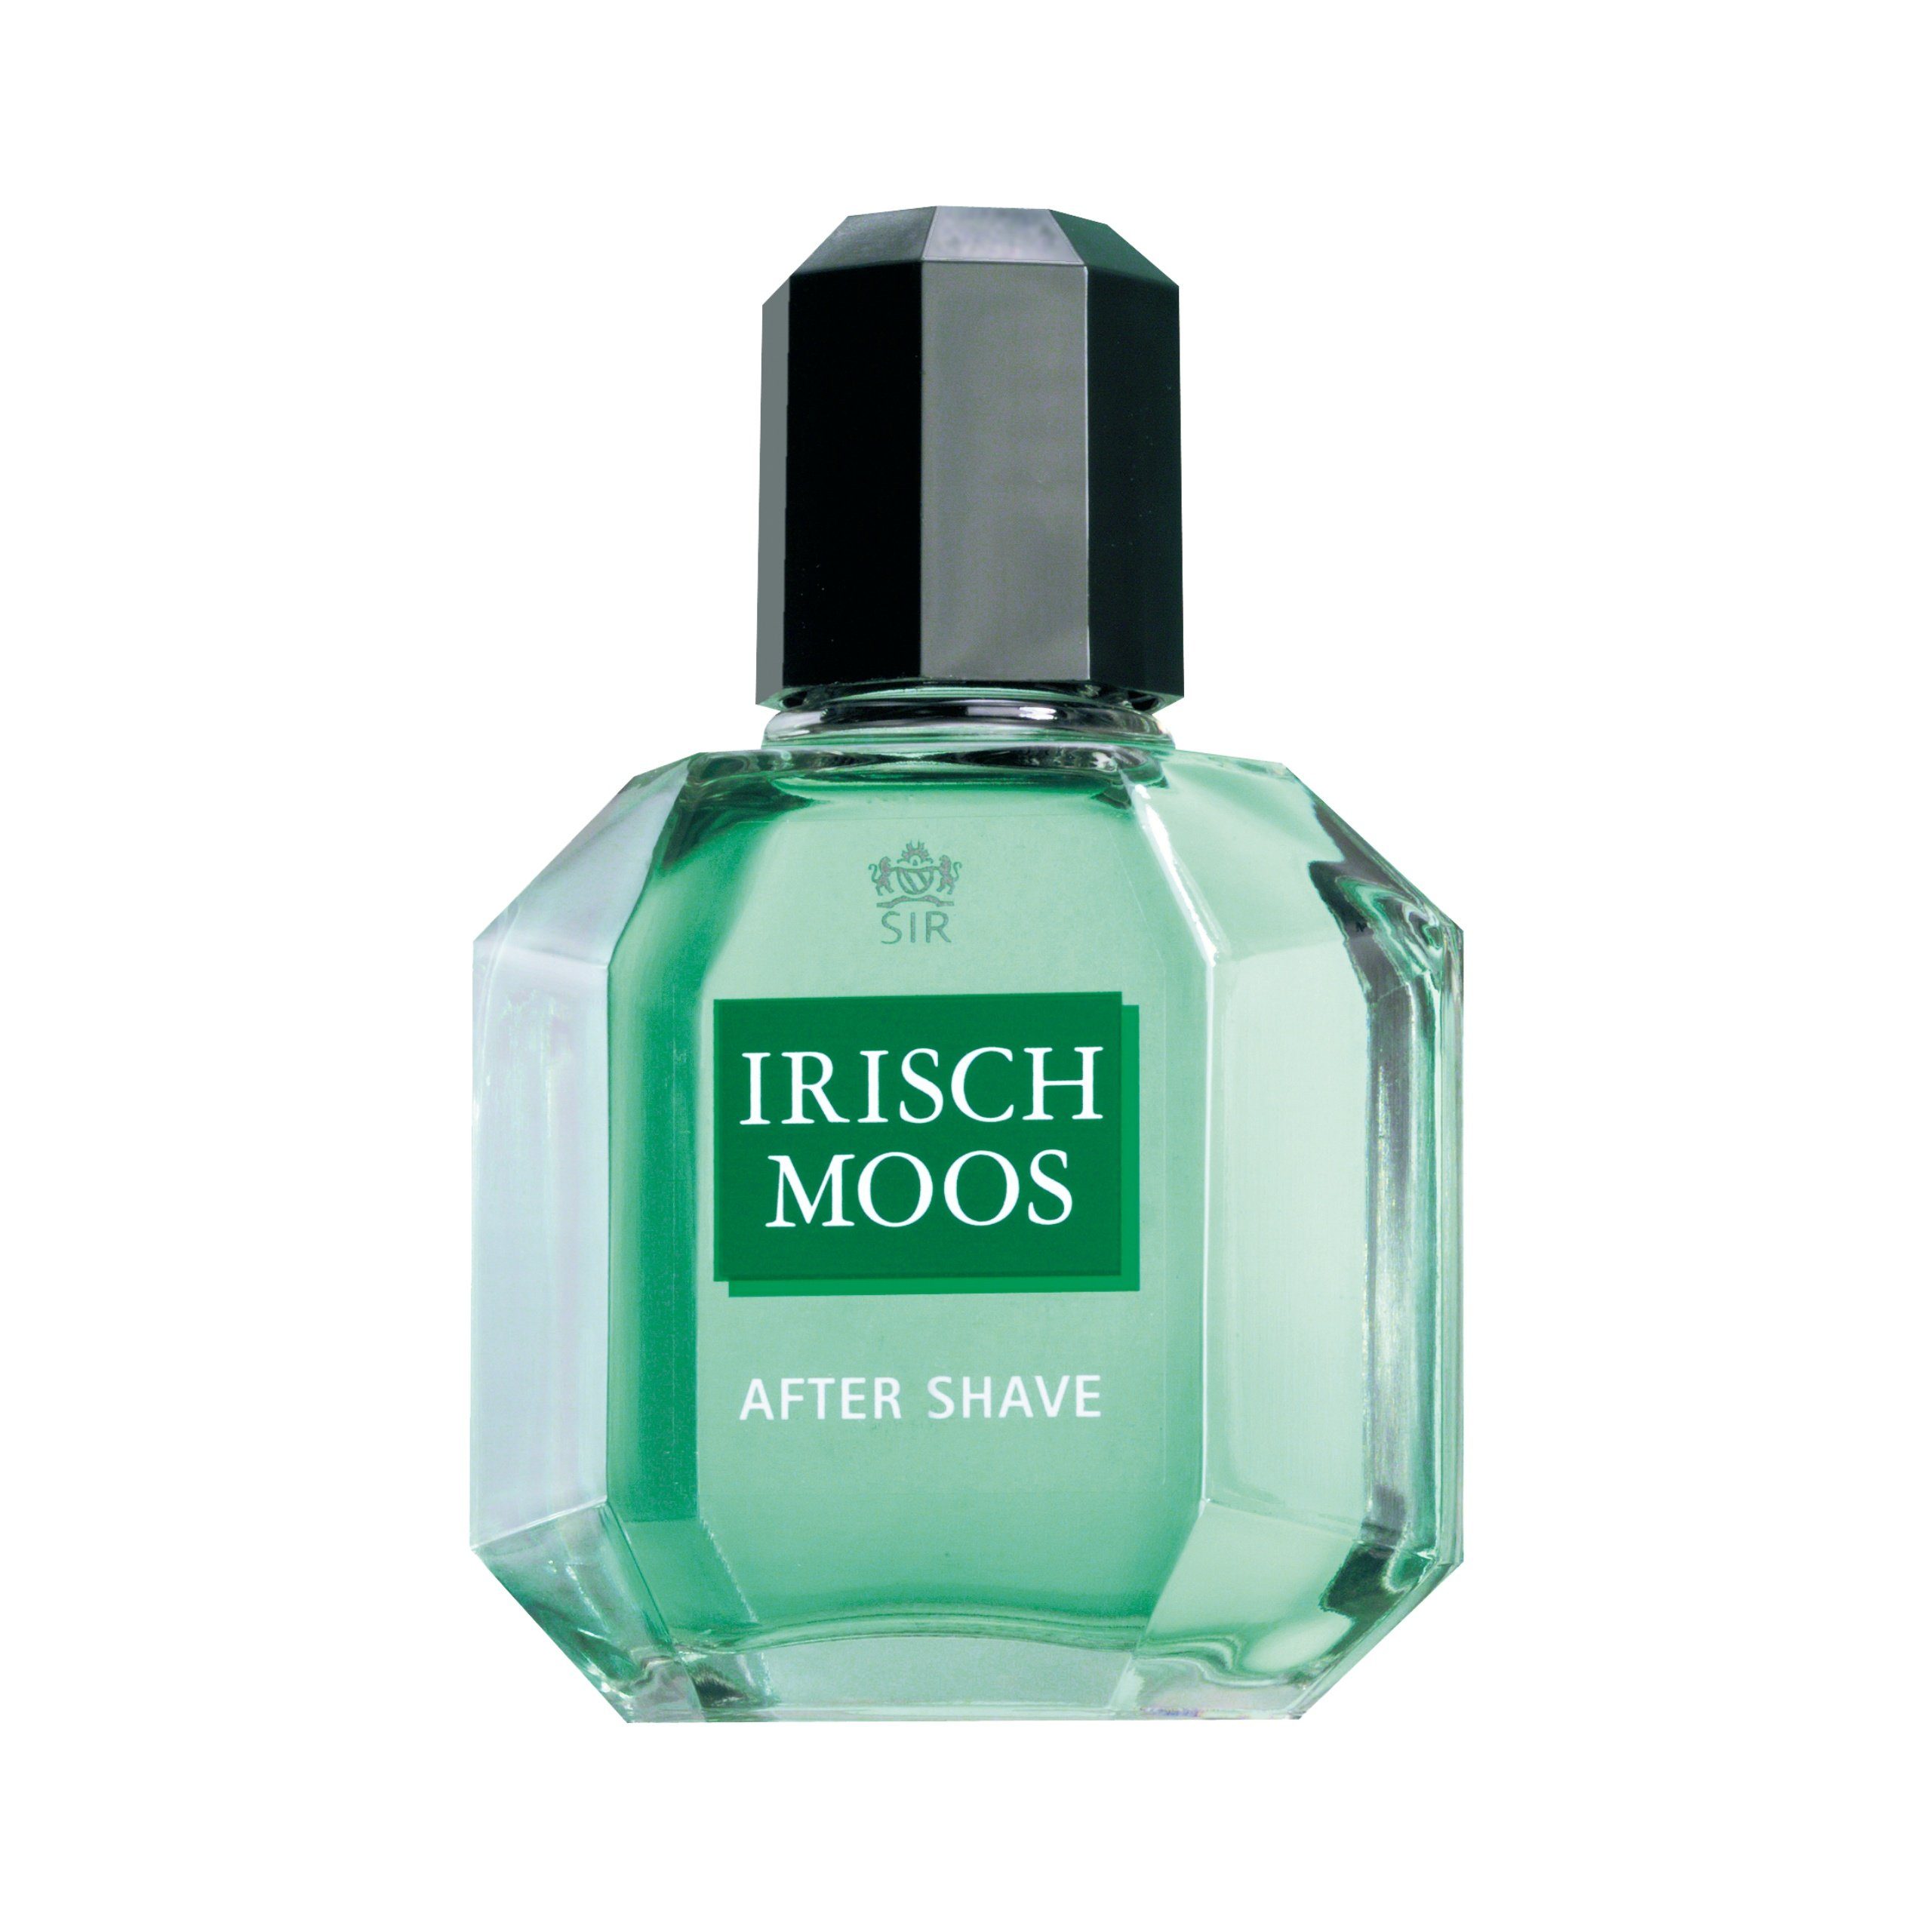 Sir Irisch Moos Gesichts-Reinigungslotion Lotion IRISCH After Shave MOOS ml SIR 100